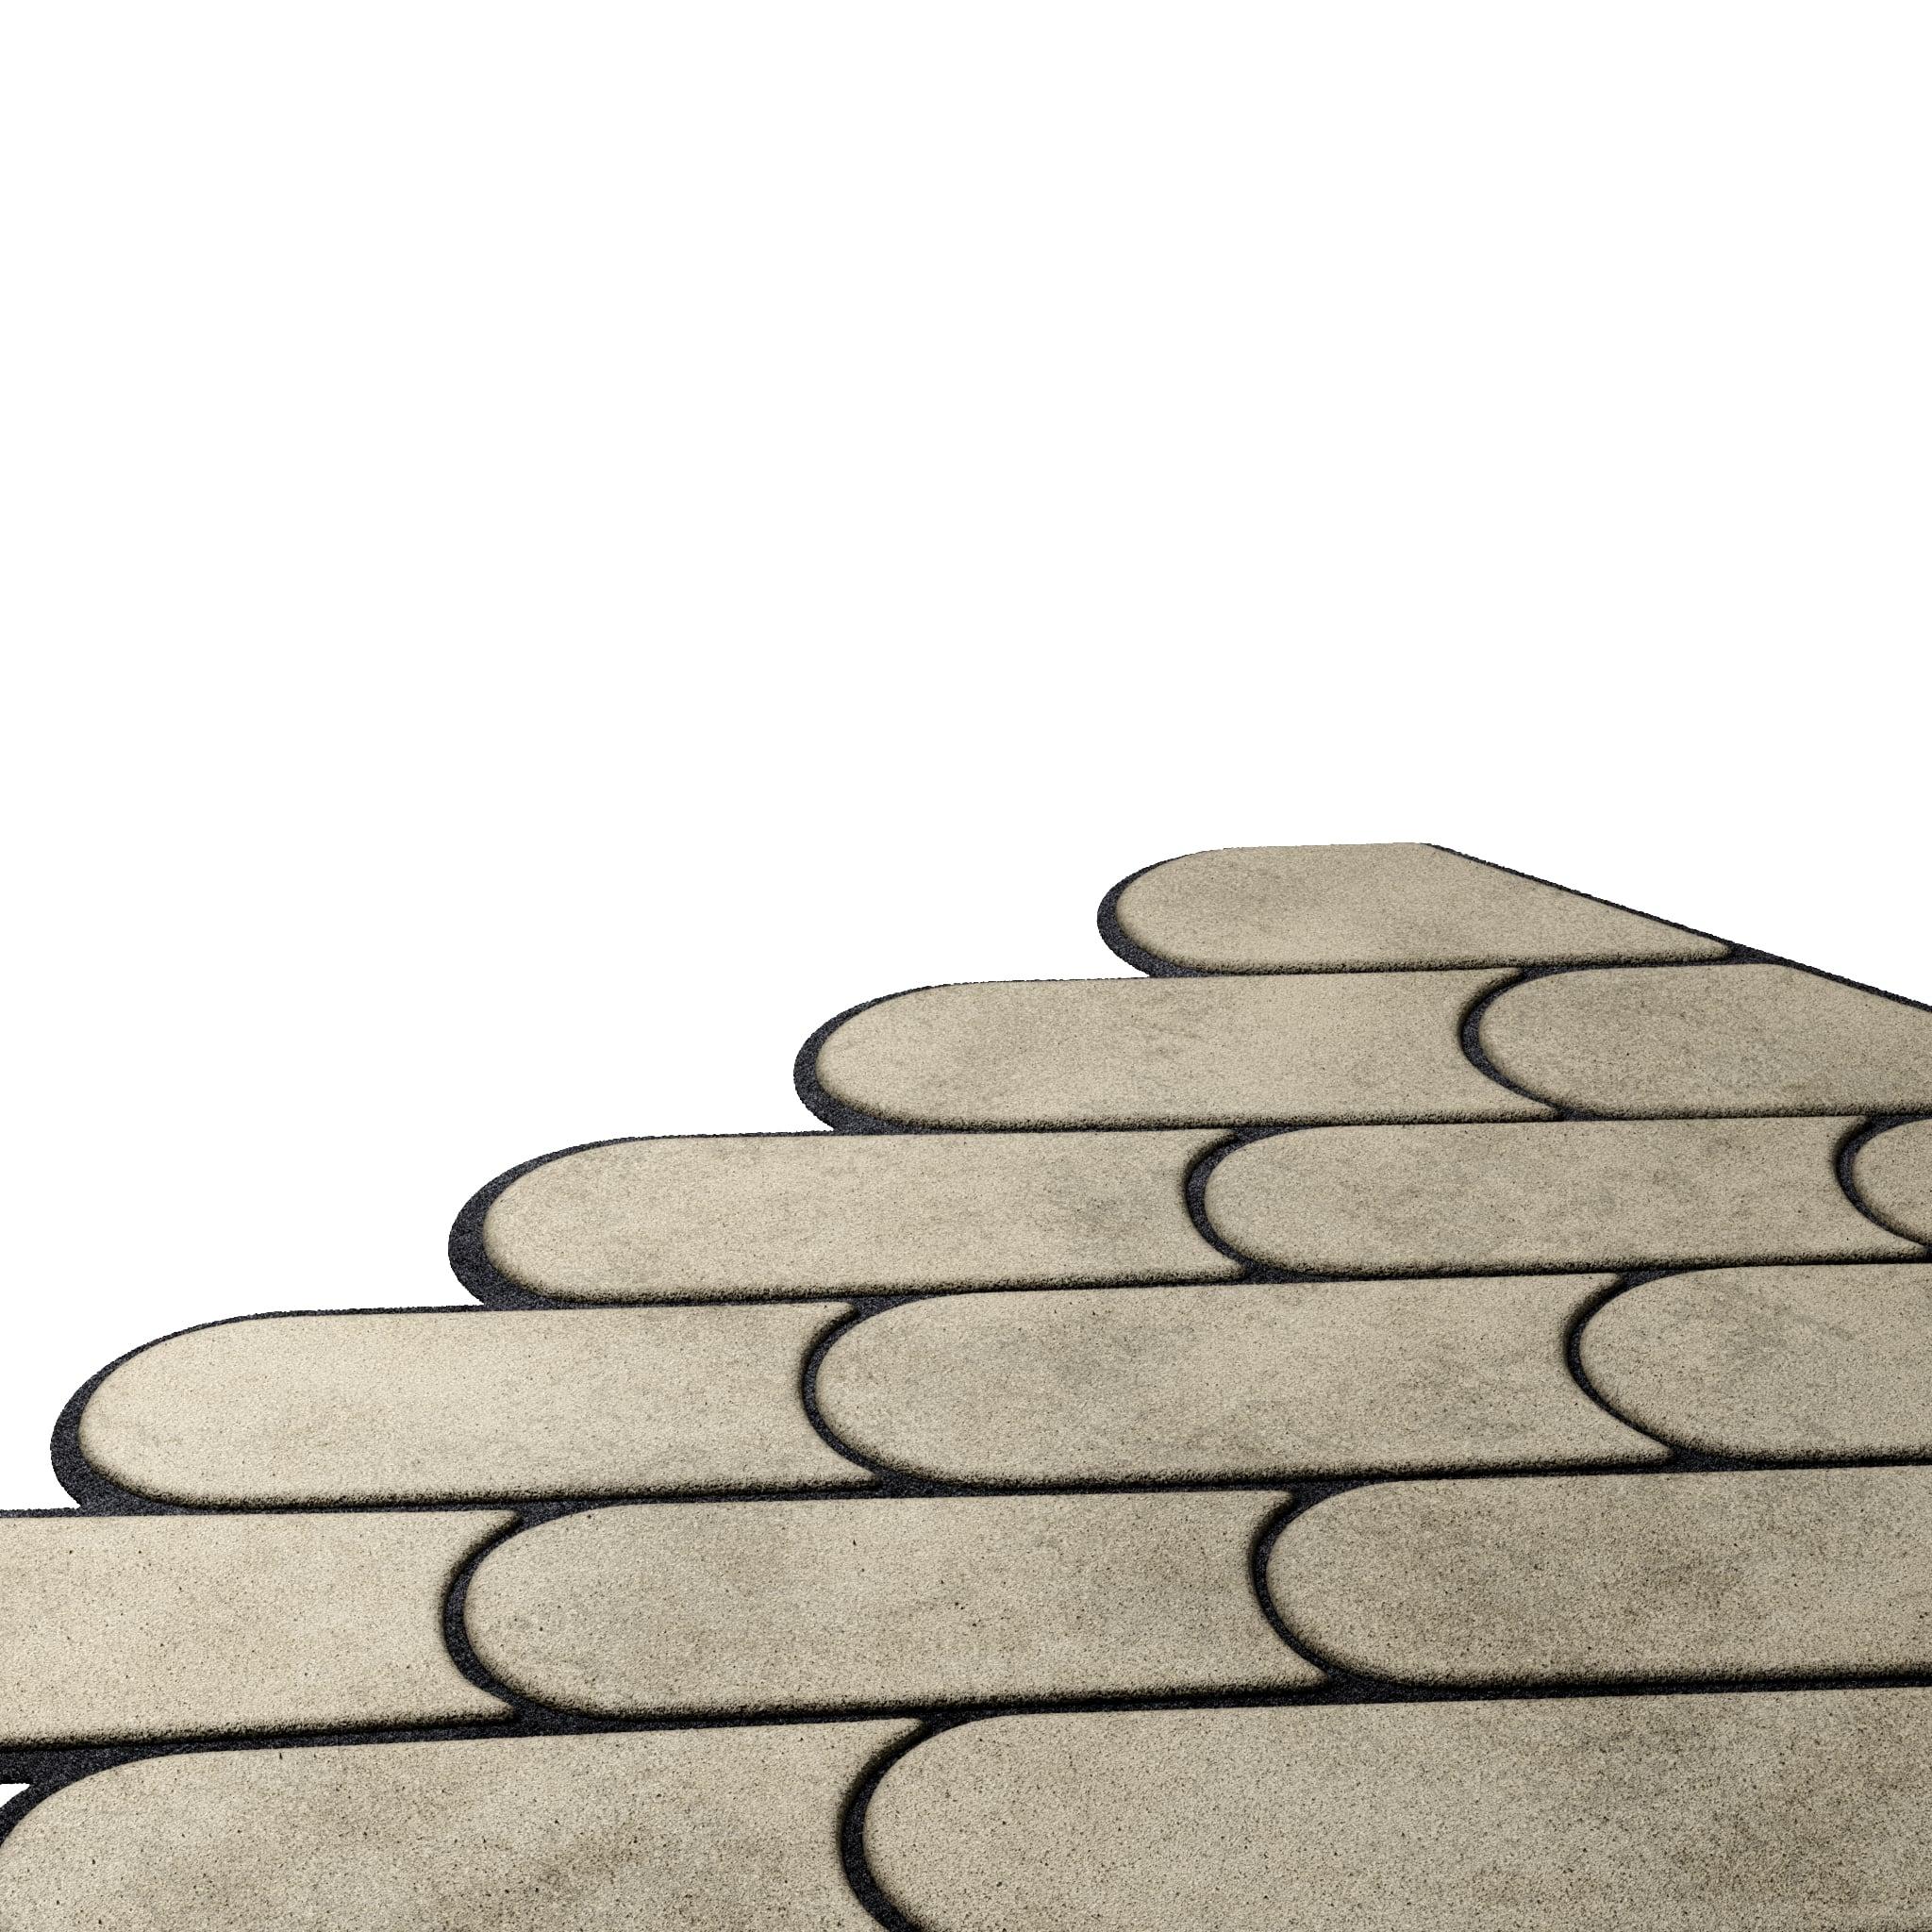 Tapis Pastel #07 ist ein pastellfarbener Teppich, der den Stil des Mid-Century Modern mit dem Memphis Design verbindet. Die Kombination aus Schwarz und gedeckten Farbtönen verleiht dem Raum Eleganz und Romantik.
Dieser pastellfarbene Teppich hat